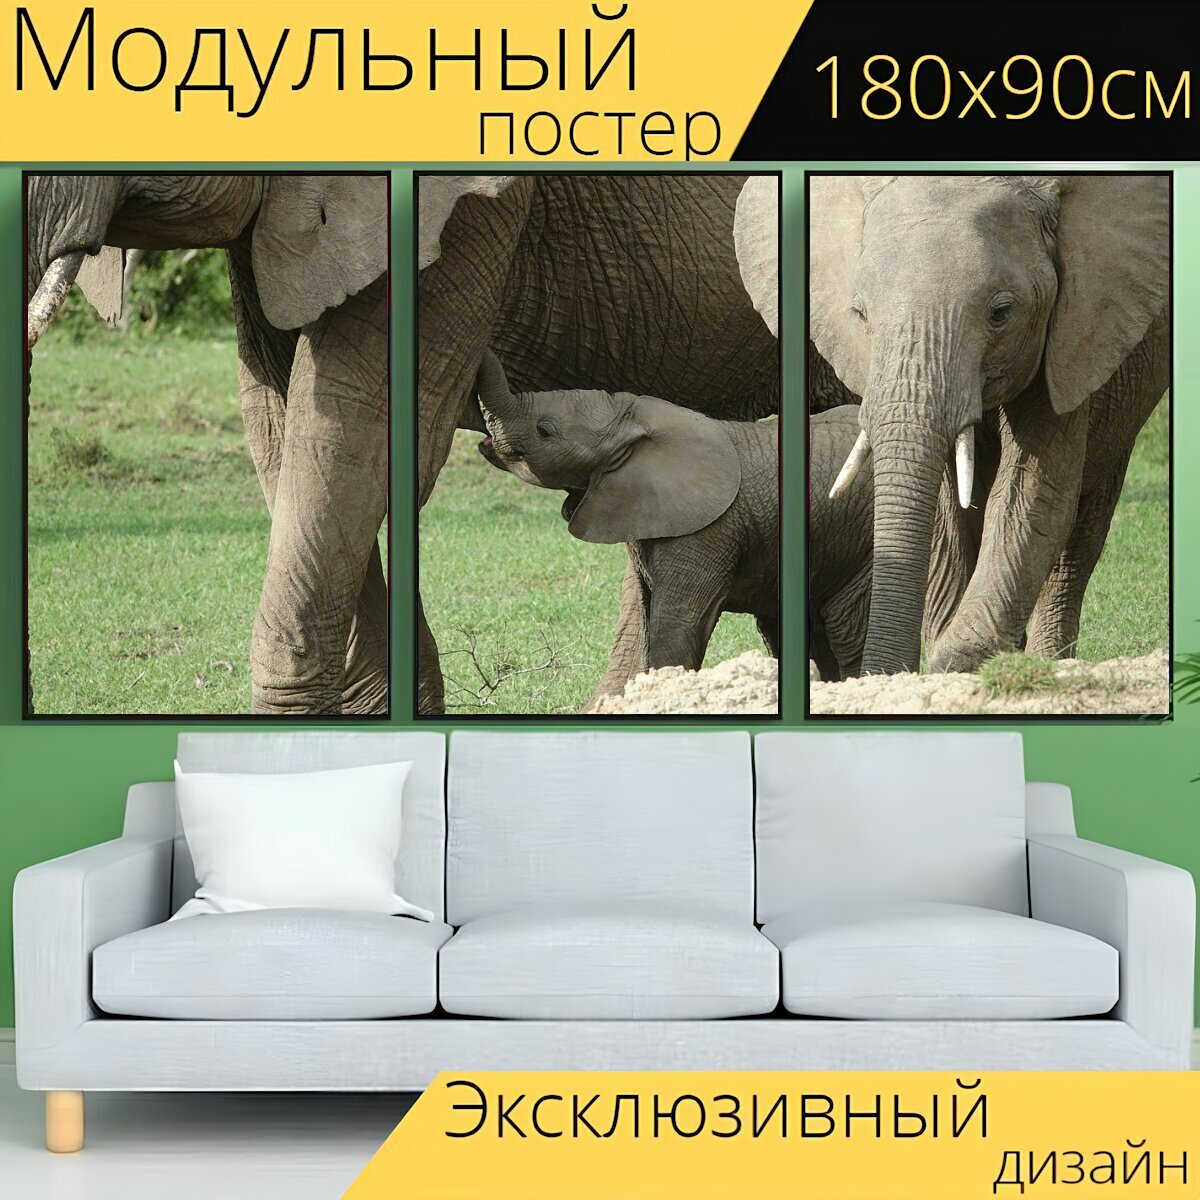 Модульный постер "Слон, дикая природа, ствол" 180 x 90 см. для интерьера